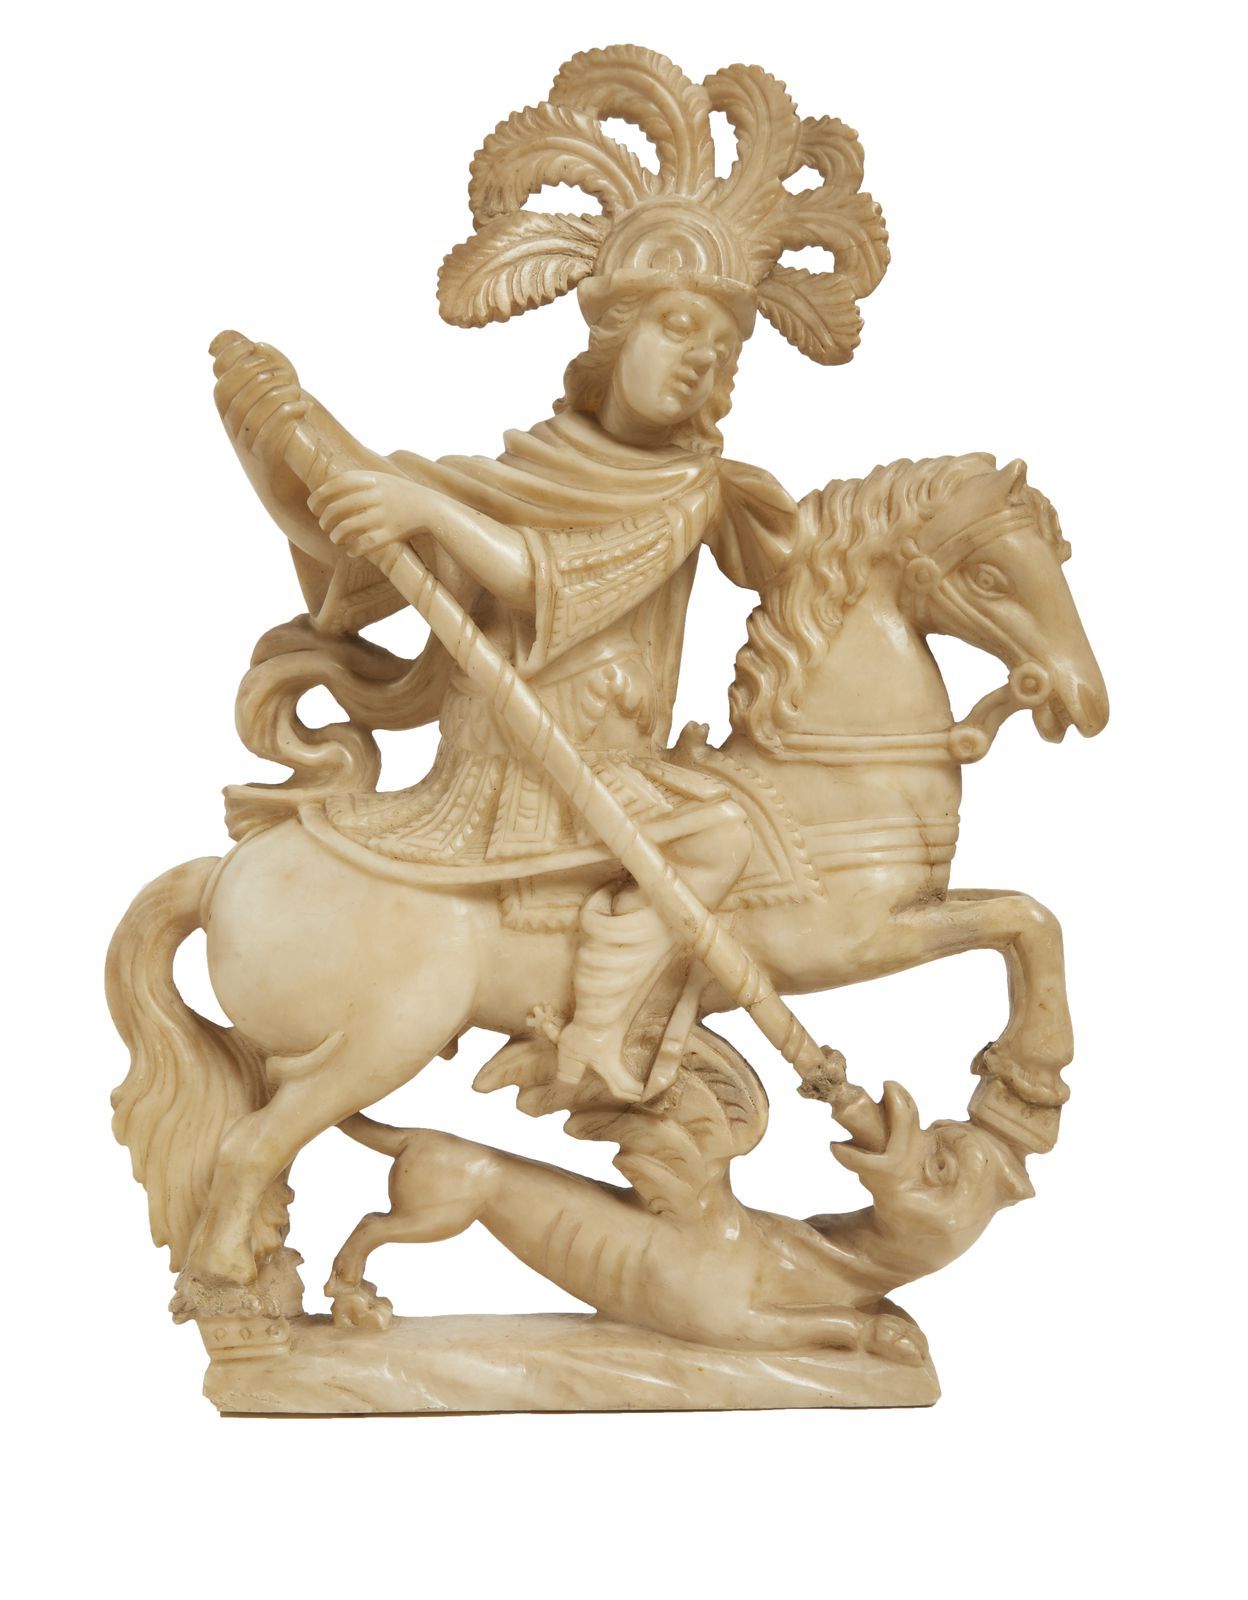 Null 255 圣乔治屠龙。

雕刻的雪花石膏雕塑。

17世纪末或18世纪初。

使用条件

41.5 x 29 cm